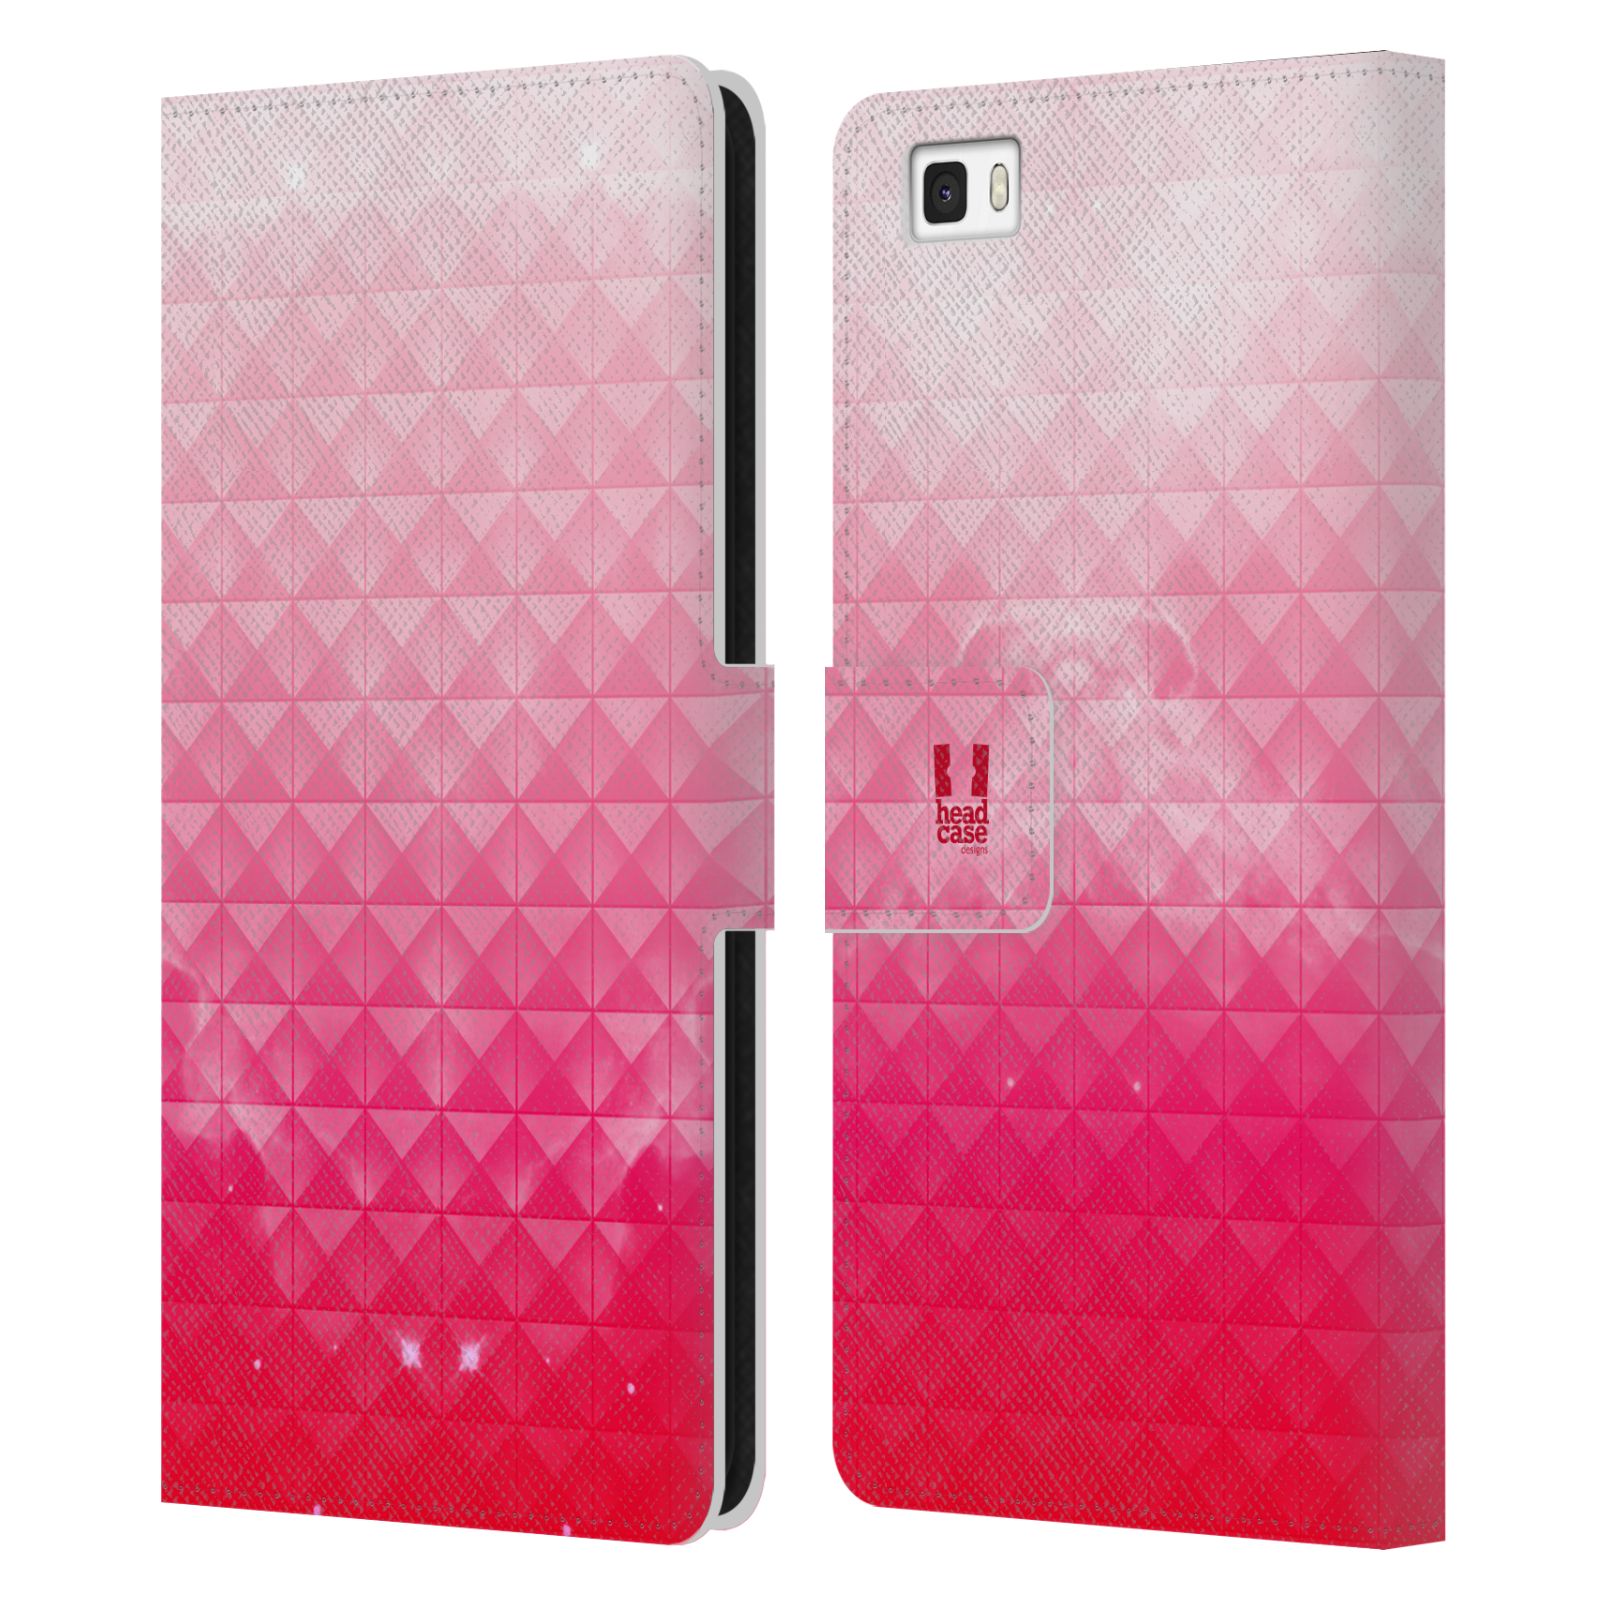 HEAD CASE Flipové pouzdro pro mobil Huawei P8 LITE barevná vesmírná mlhovina růžová jahoda